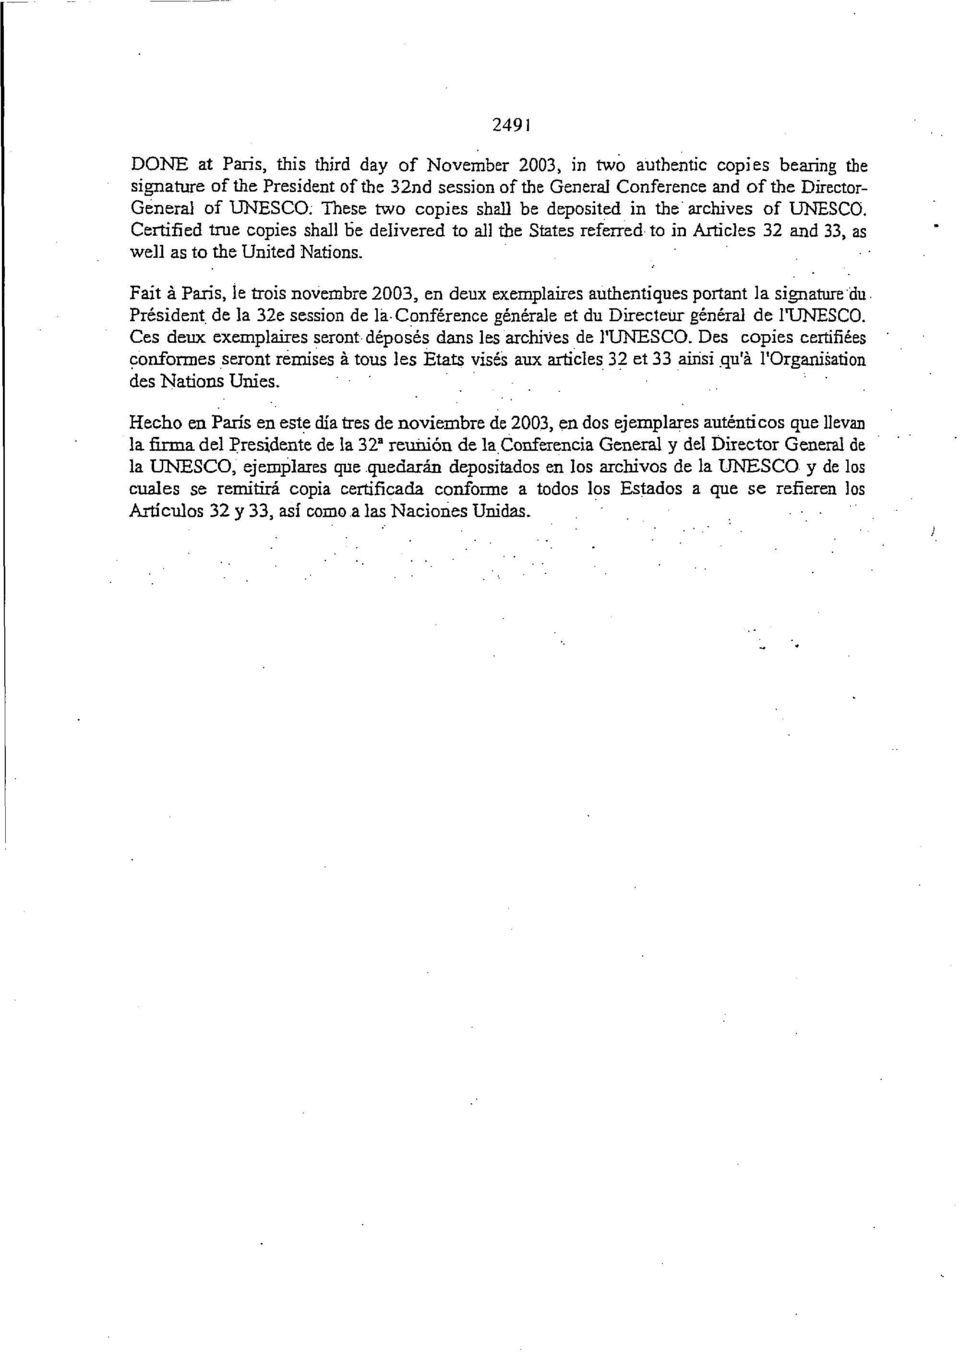 Fait a Paris, le trois noverabre 2003, en deux exemplaires authentiques portant la signature du President de la 32e session de la Conference generate et du Directeur general de 1TJNESCO.